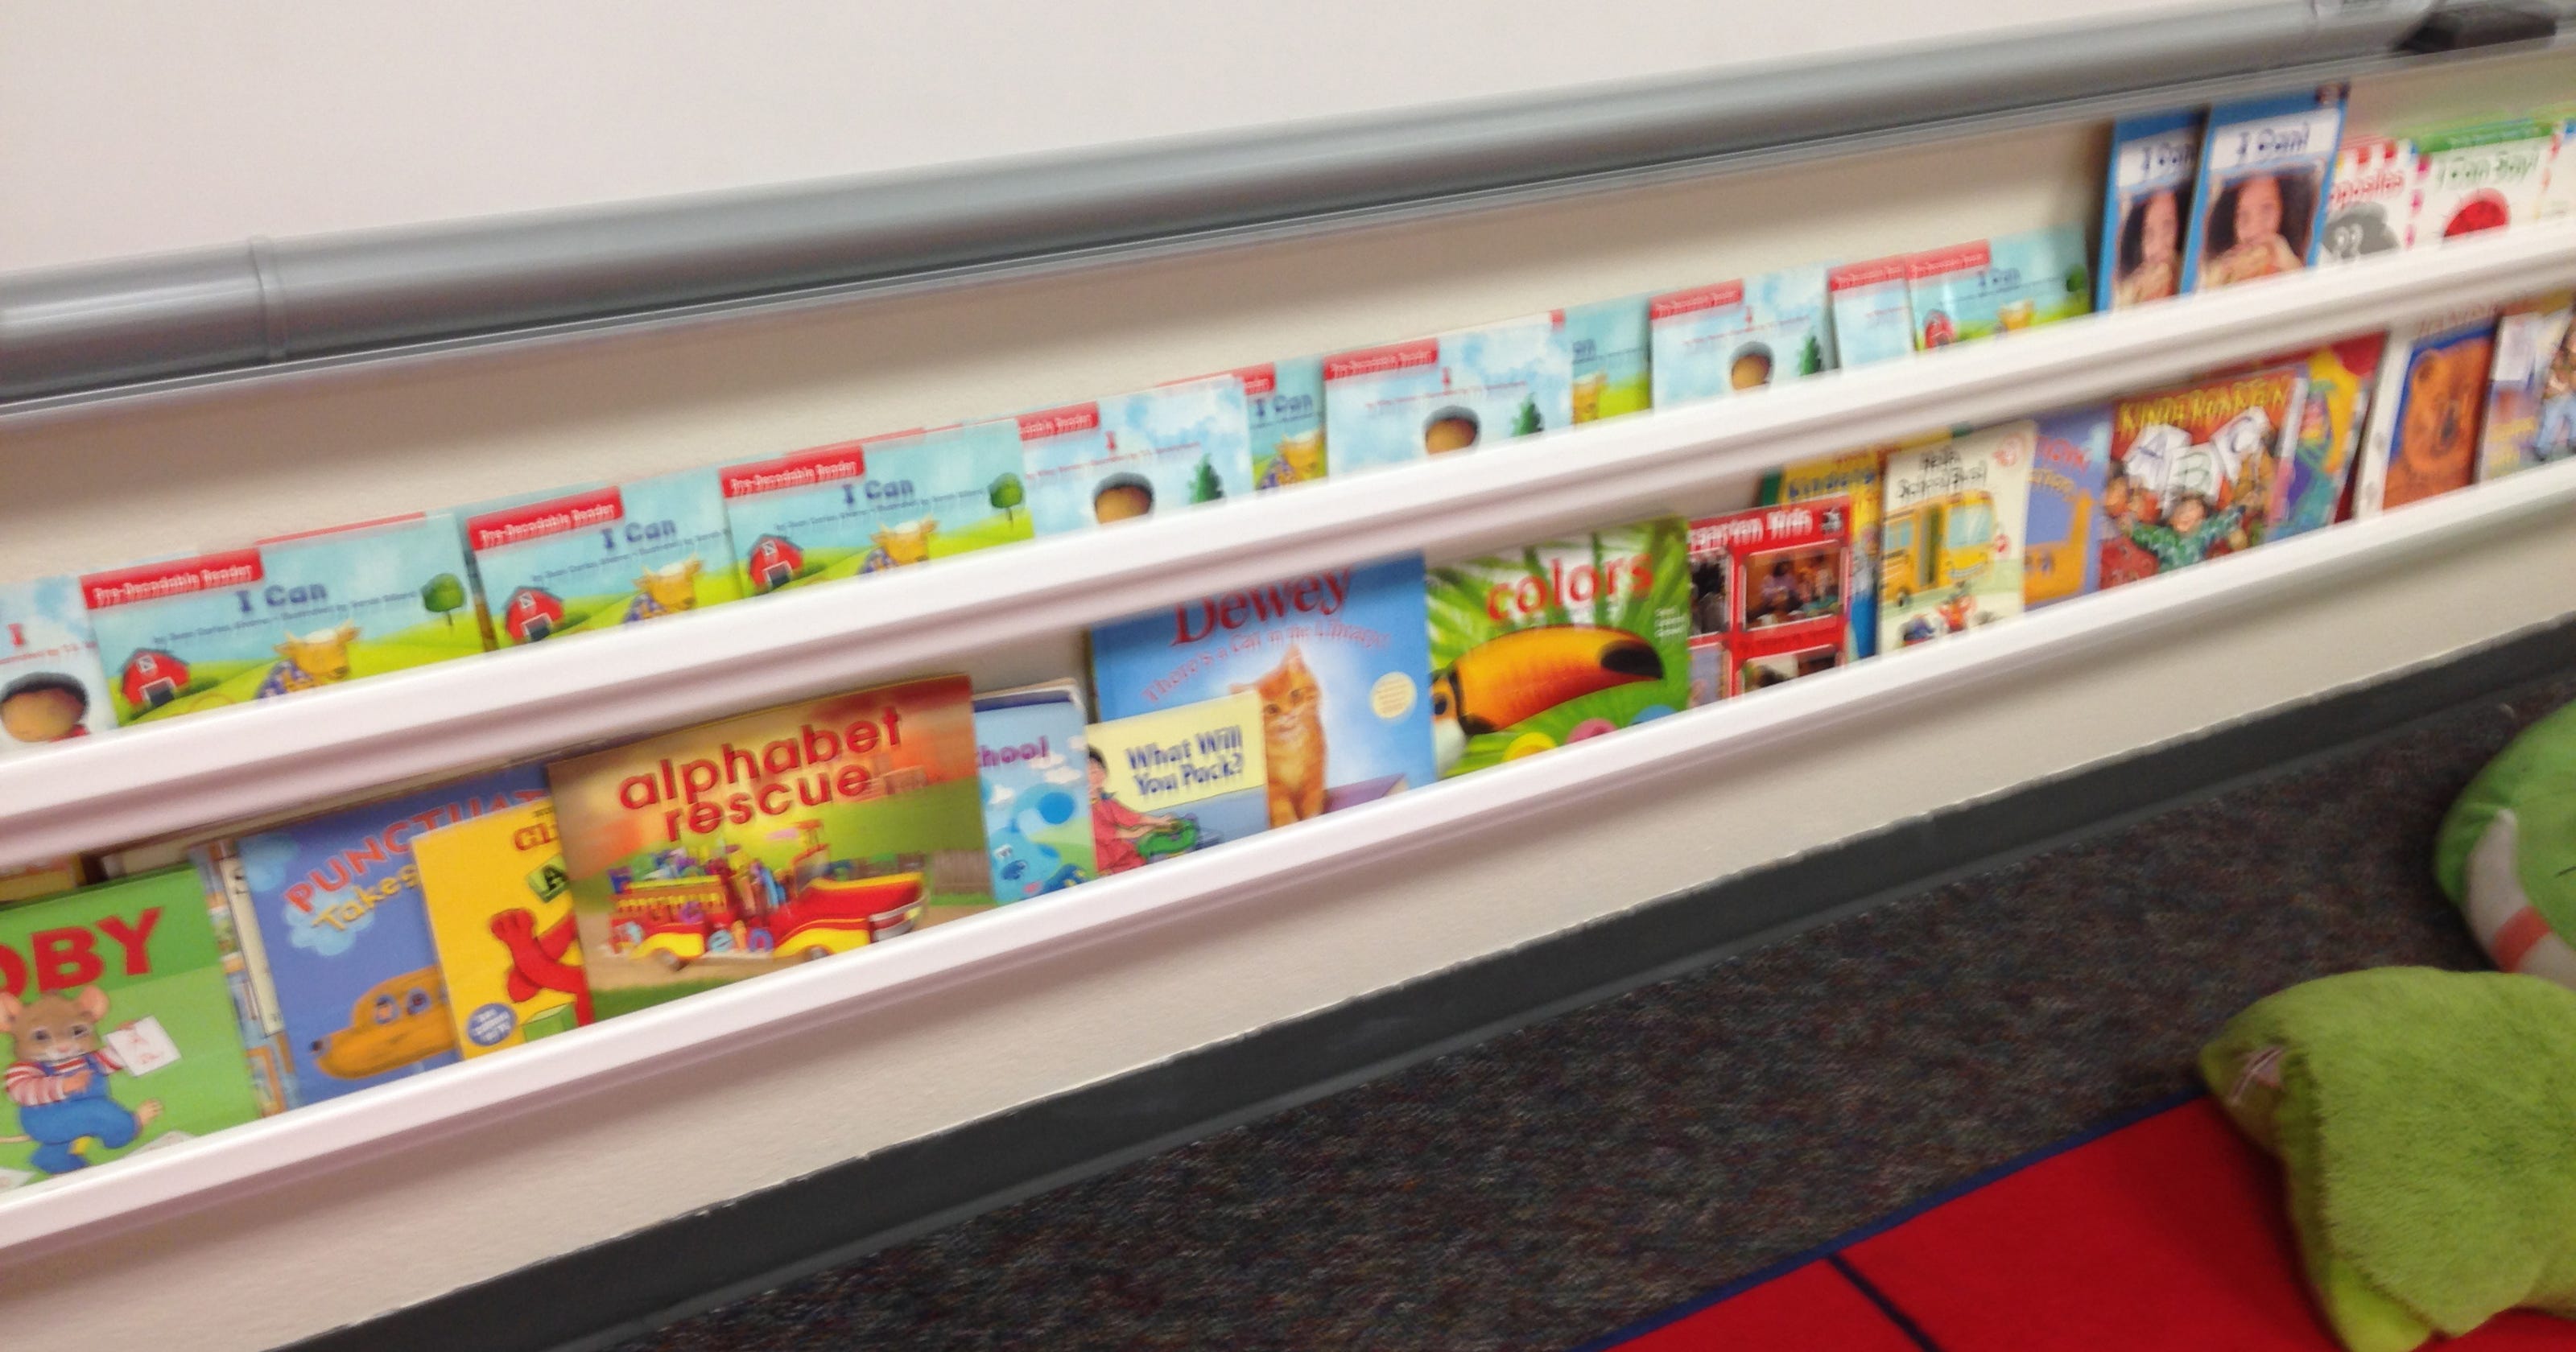 Tips To Make Rain Gutter Bookshelves For Your Classroom